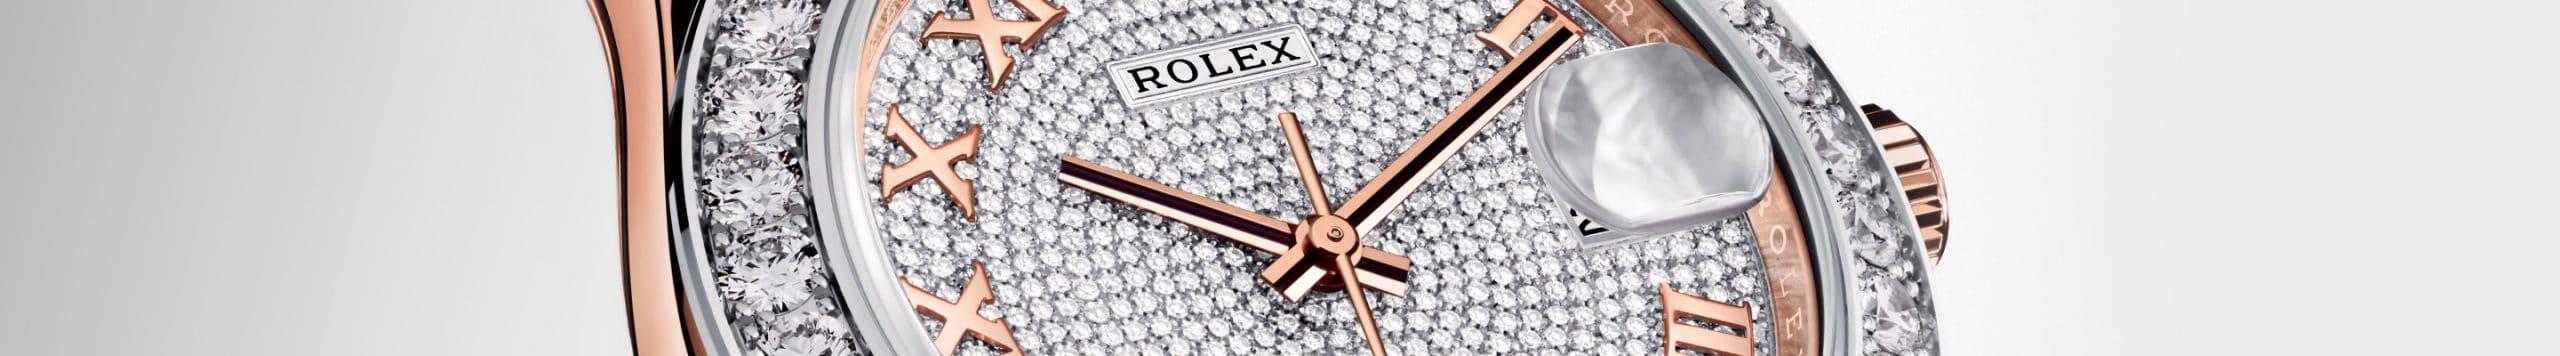 นาฬิกา Rolex Pearlmaster ที่ เพนดูลัม เชียงใหม่